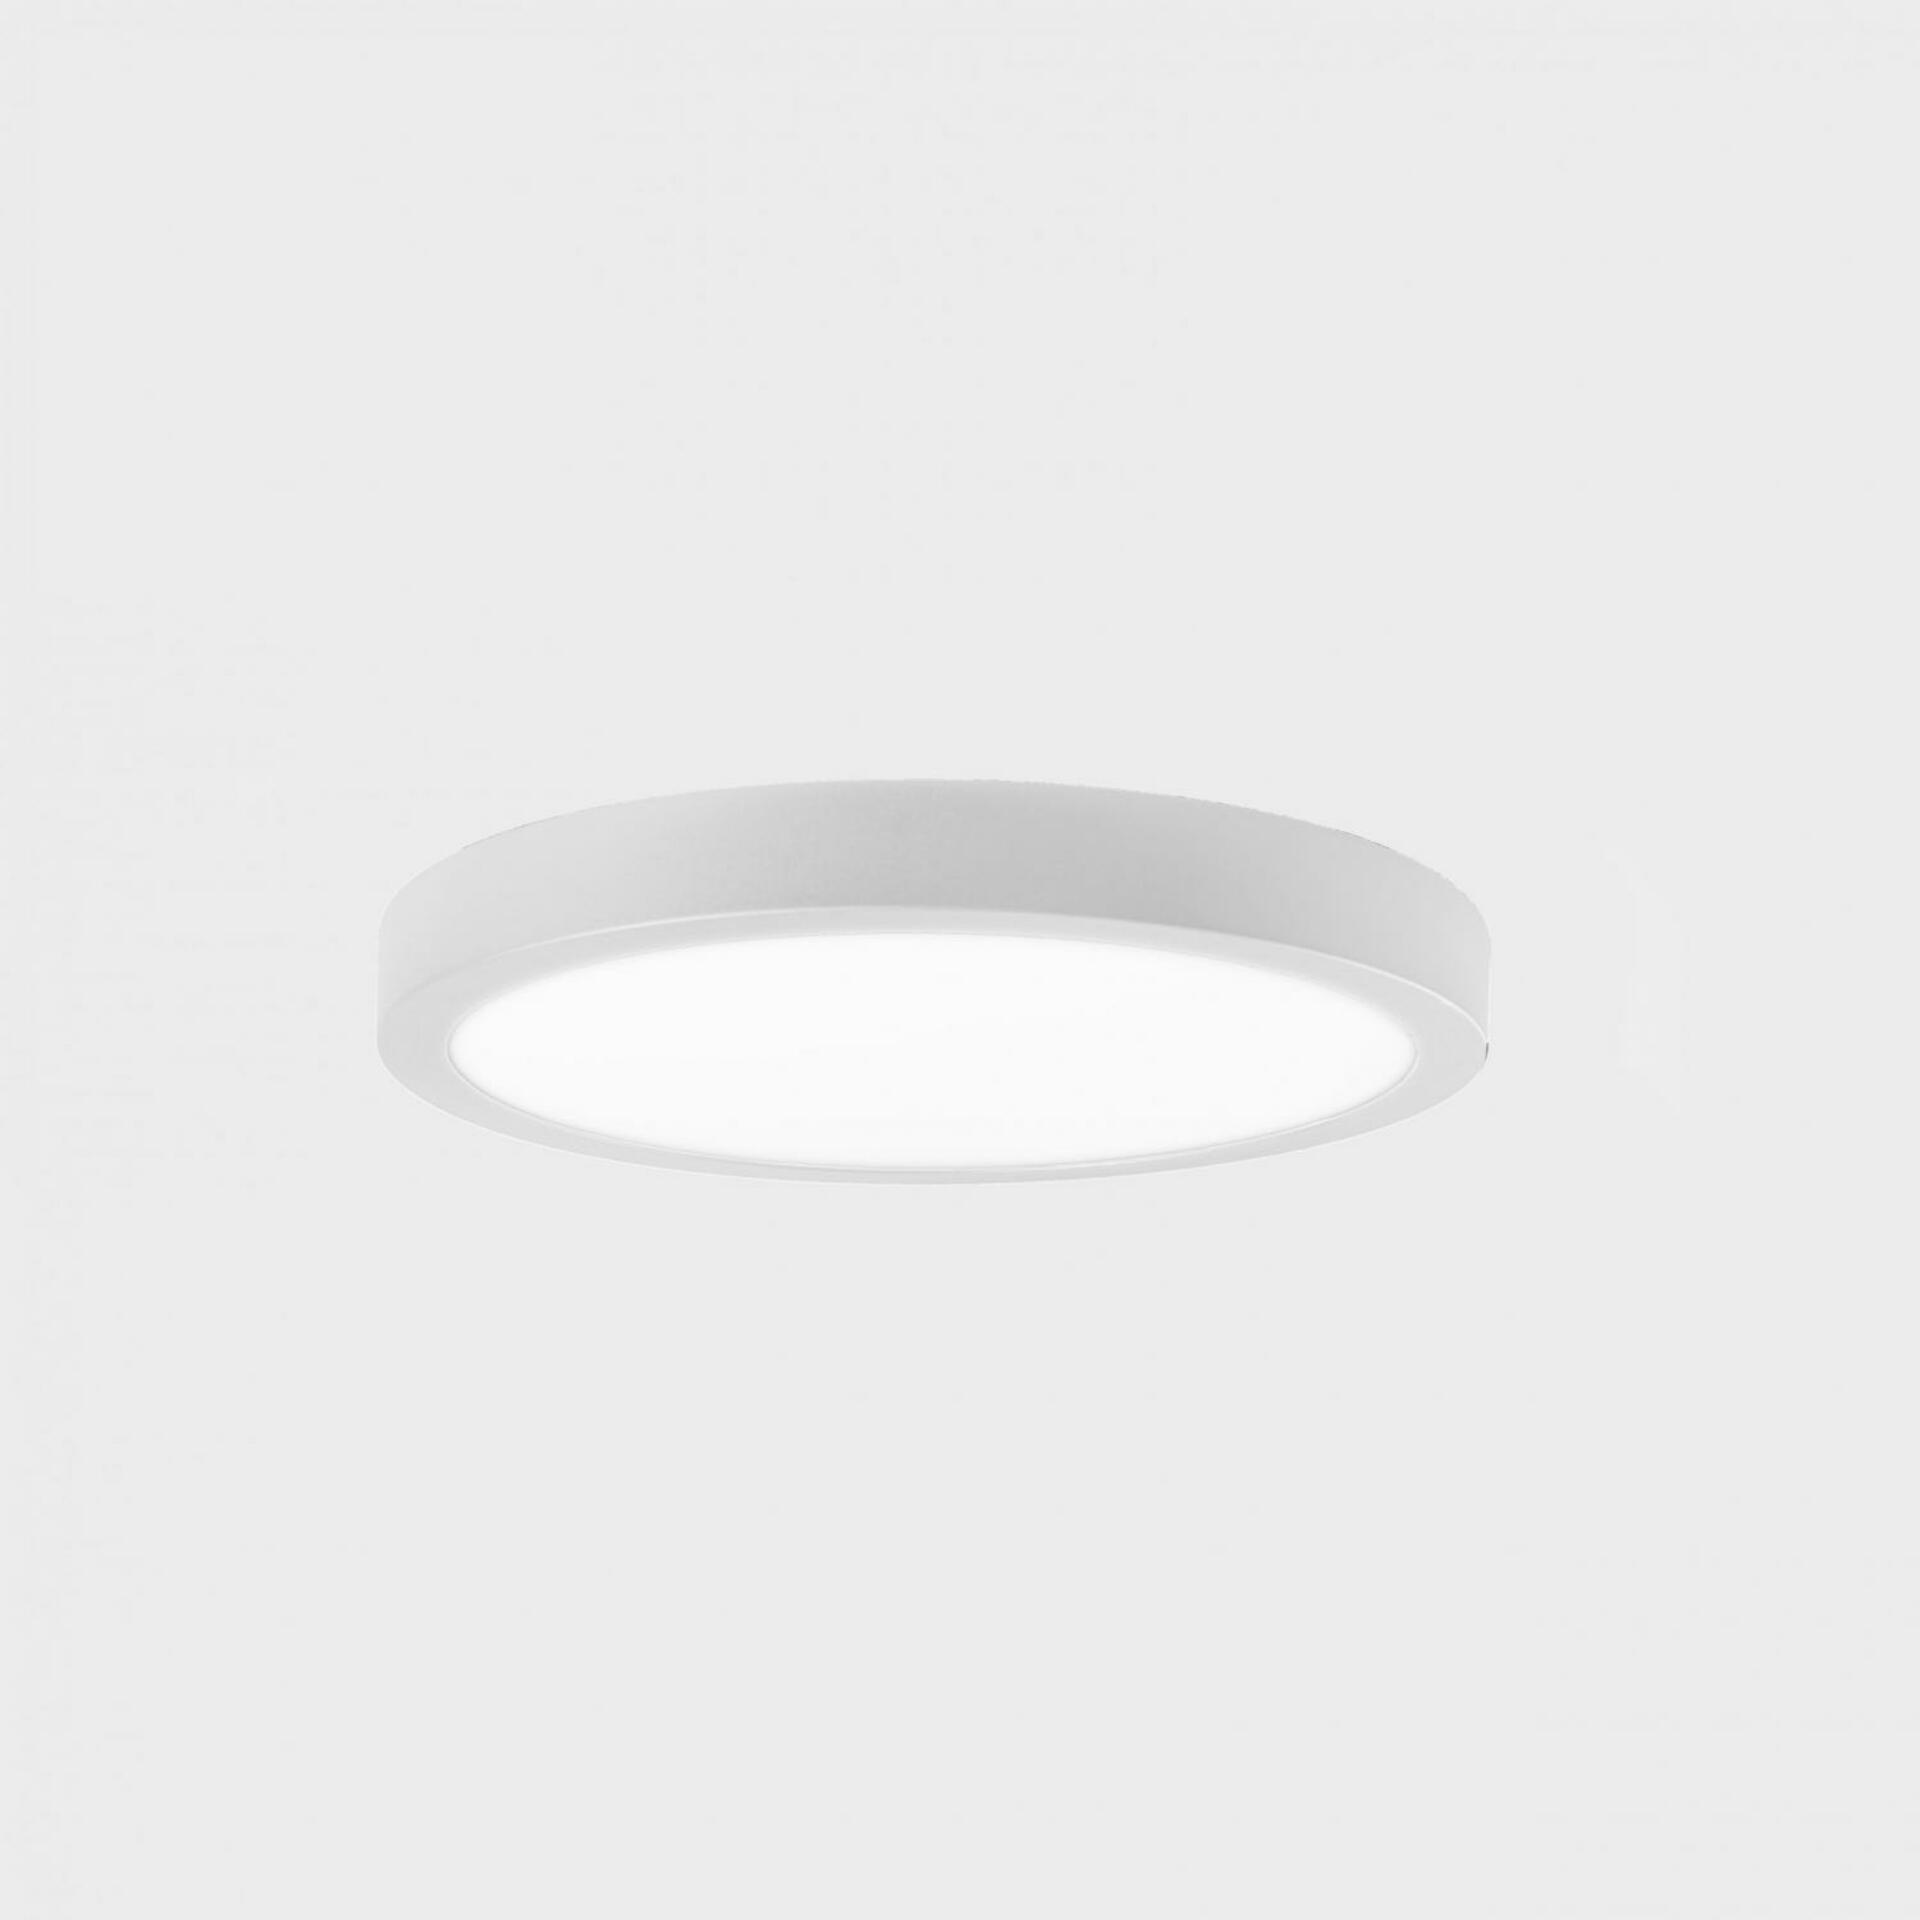 KOHL LIGHTING KOHL-Lighting DISC SLIM stropní svítidlo pr. 300 mm bílá 24 W CRI 80 4000K Non-Dimm